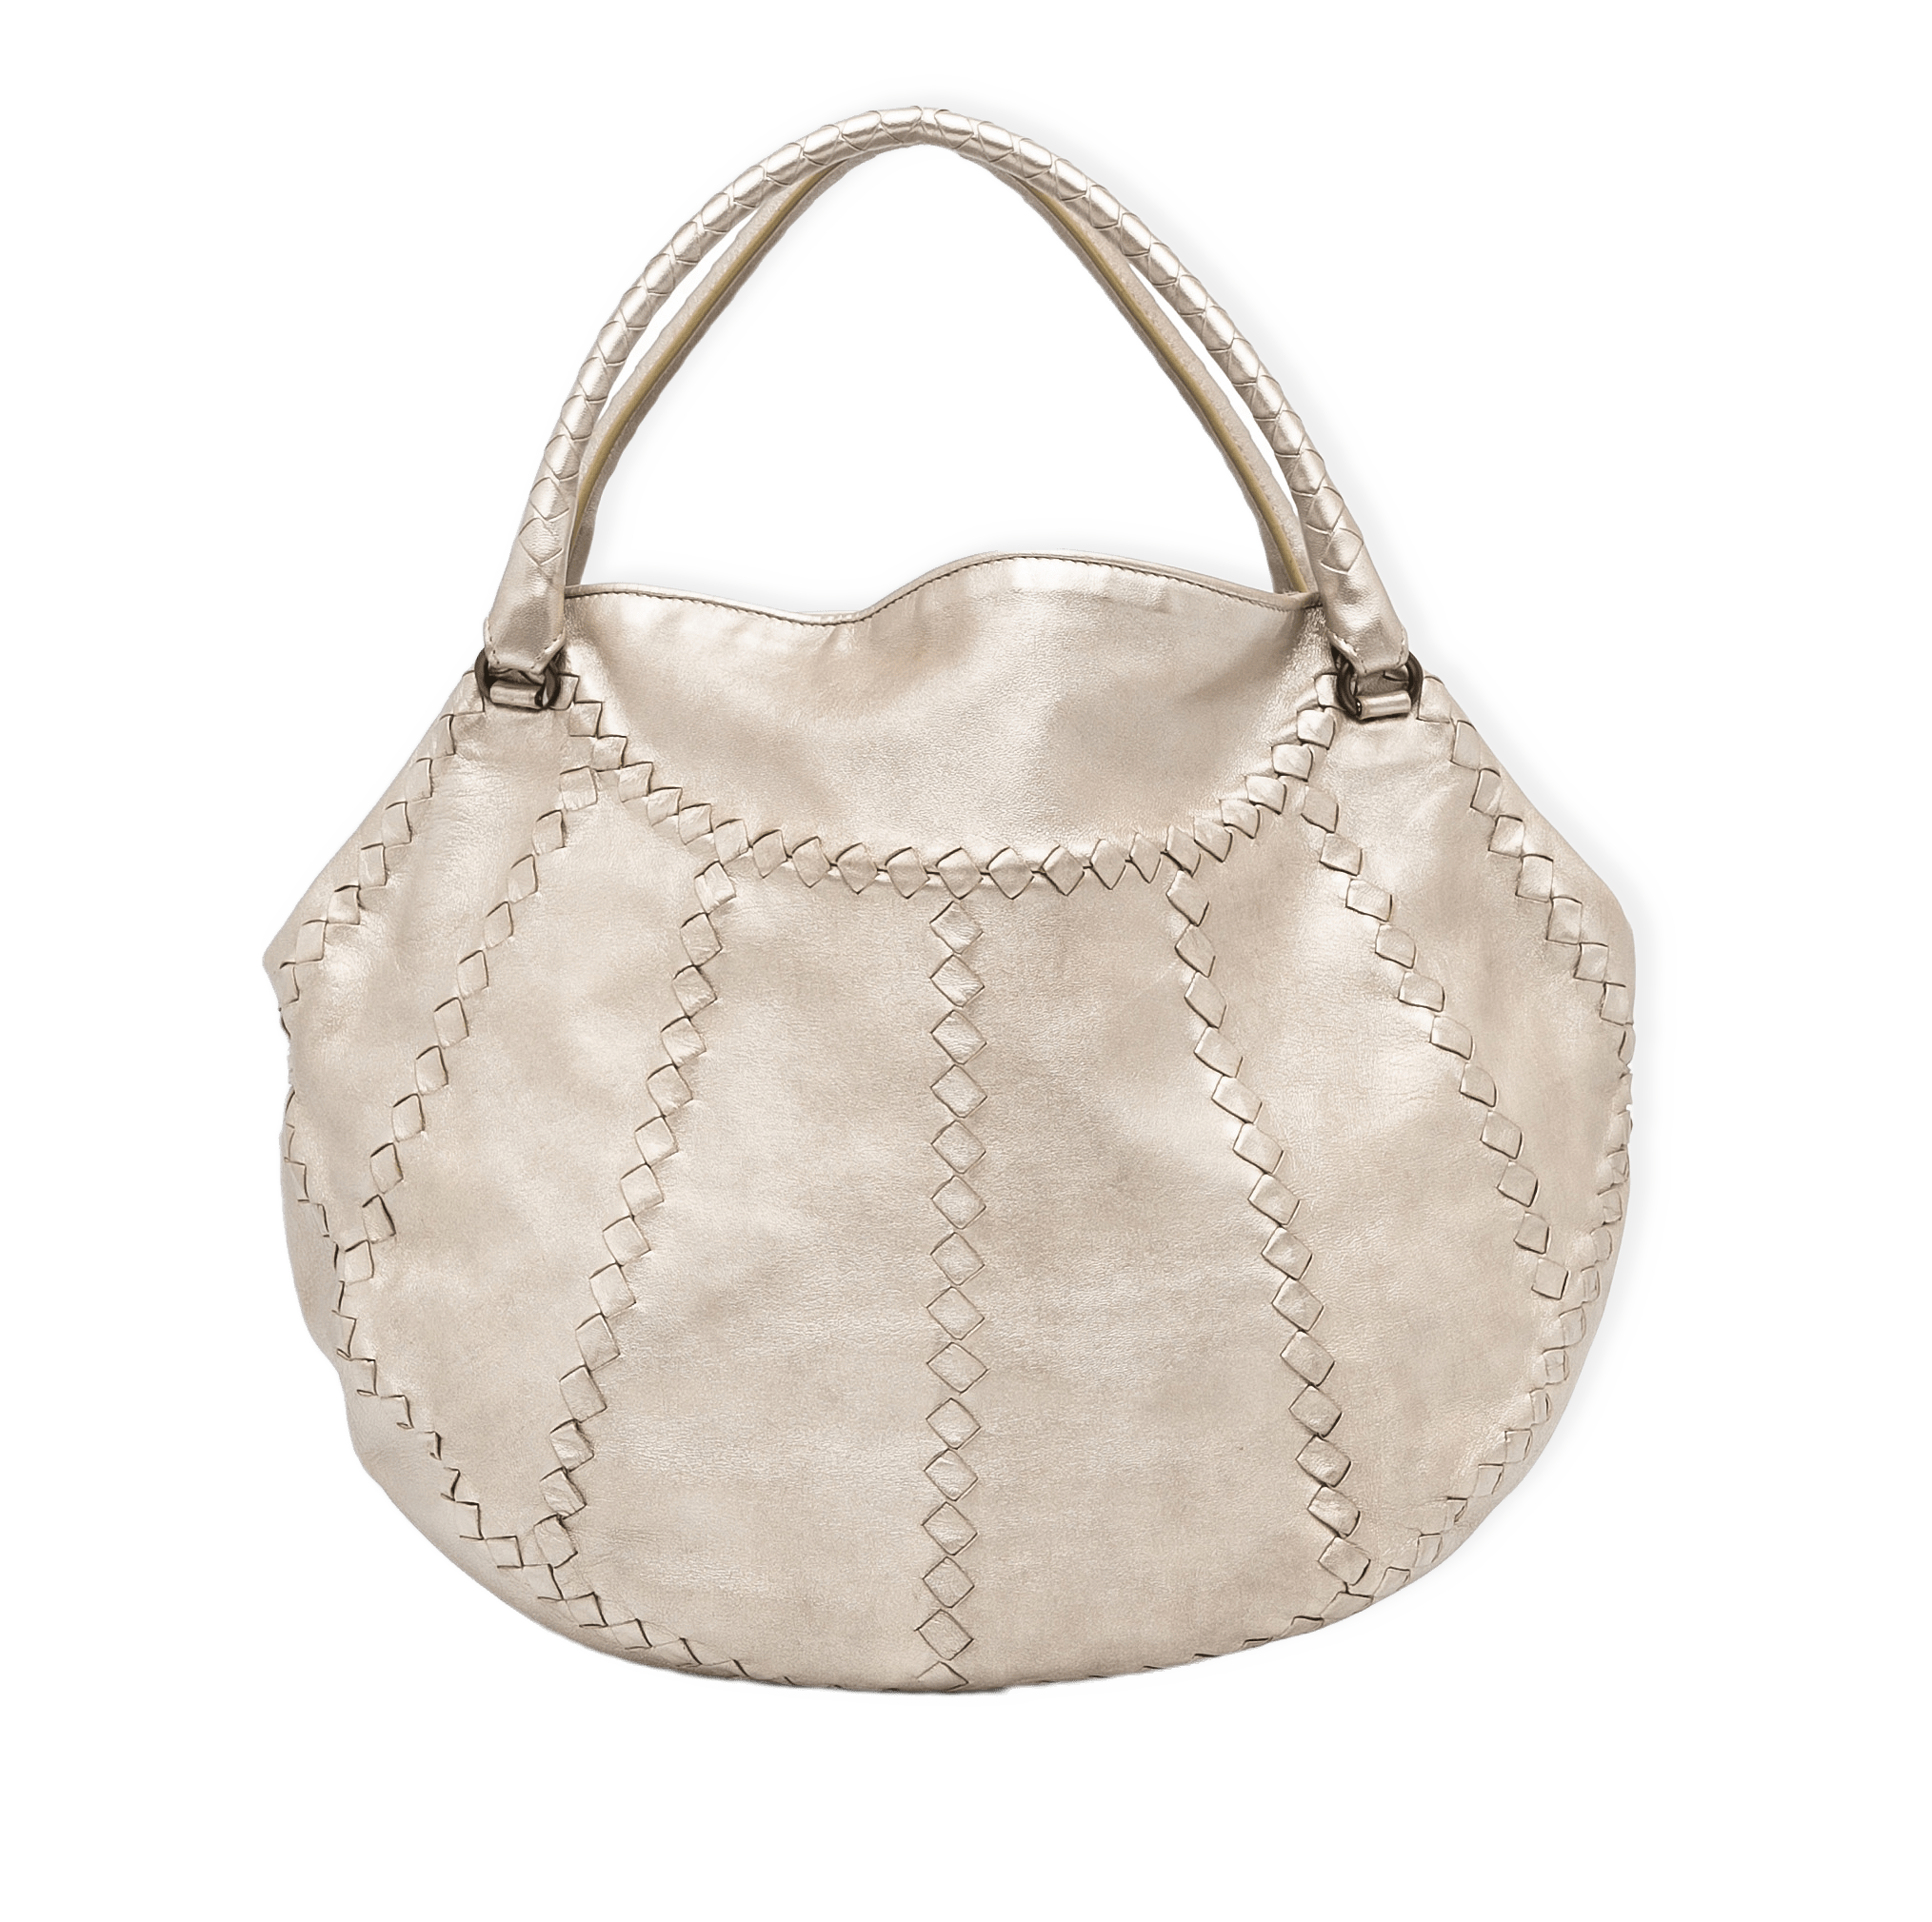 Bottega Veneta Intrecciato Metallic Tote Bag från Luxclusif